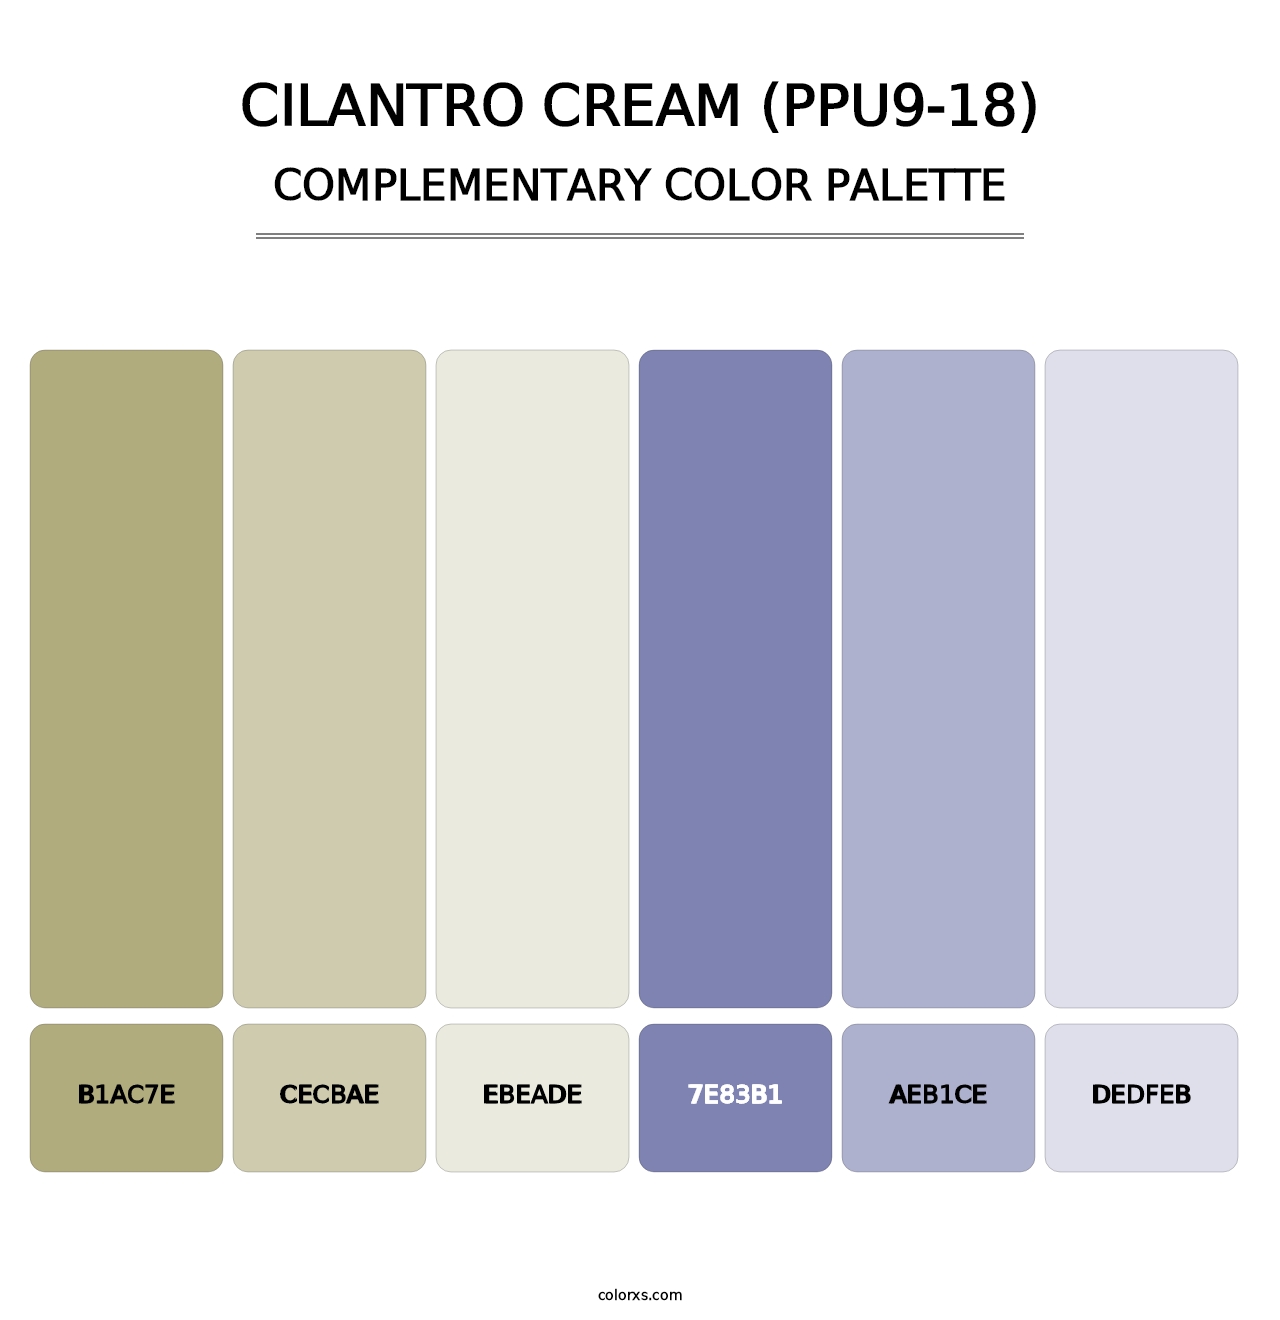 Cilantro Cream (PPU9-18) - Complementary Color Palette